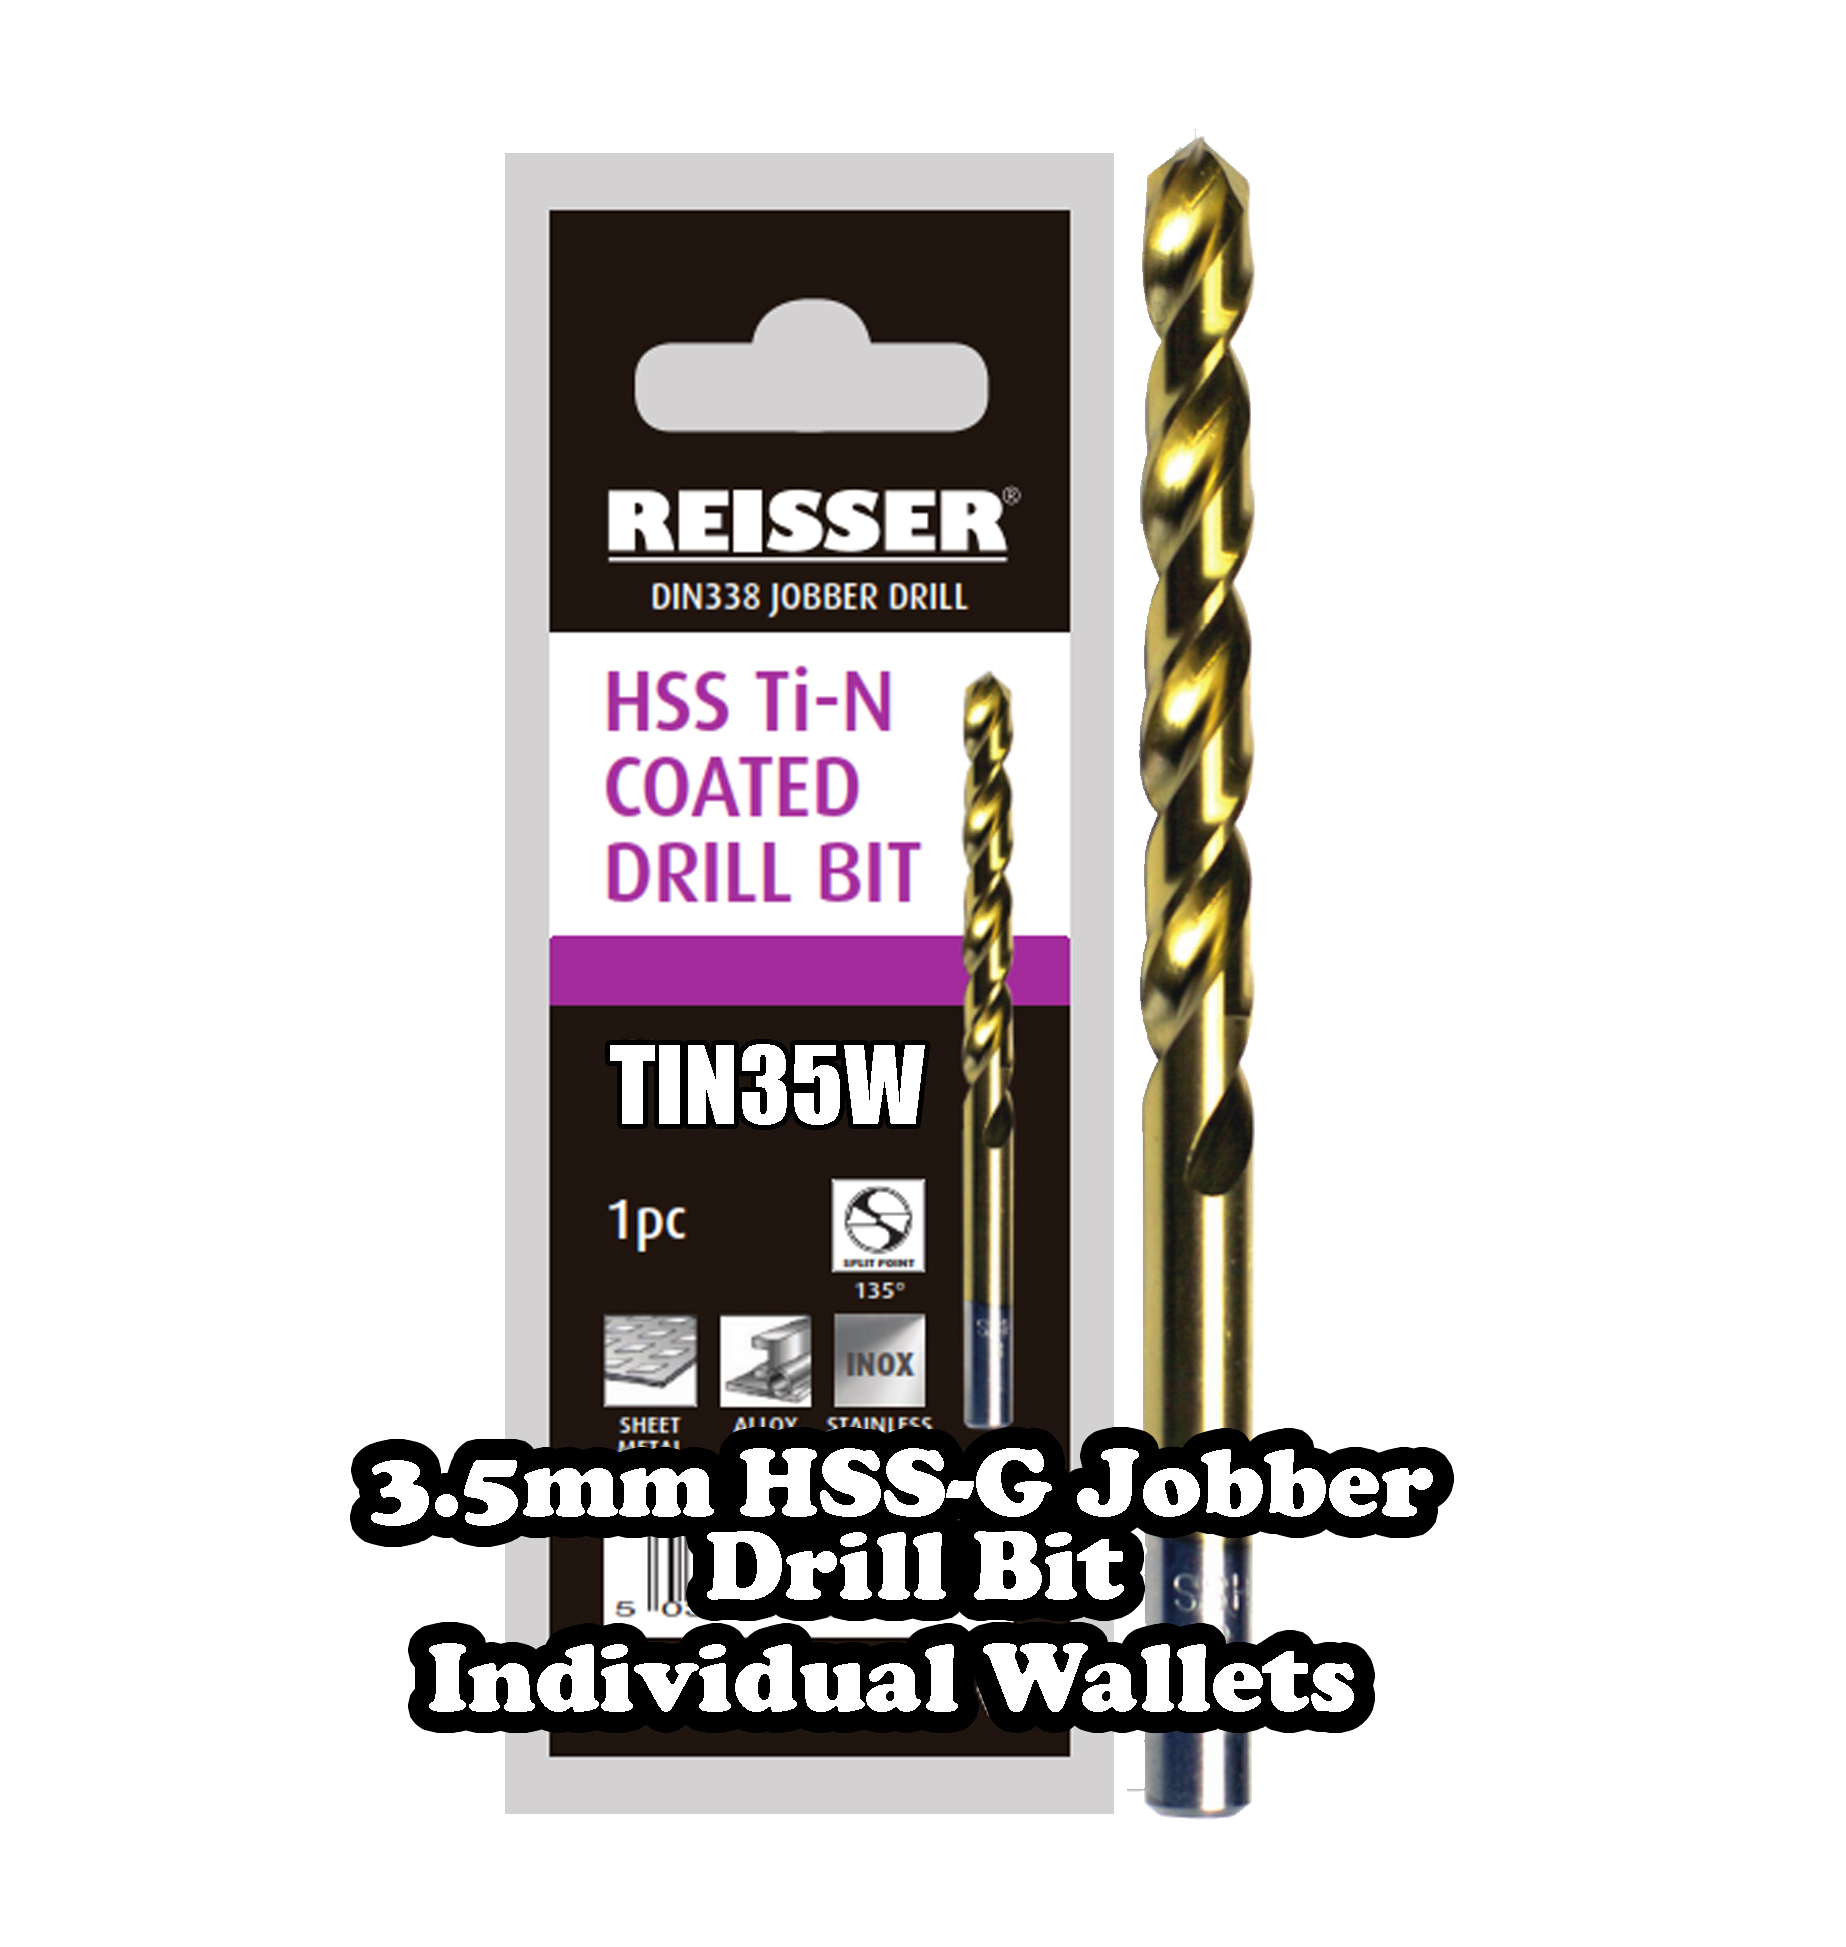 3.5mm HSS Jobber Drill Bit (SINGLE WALLET)